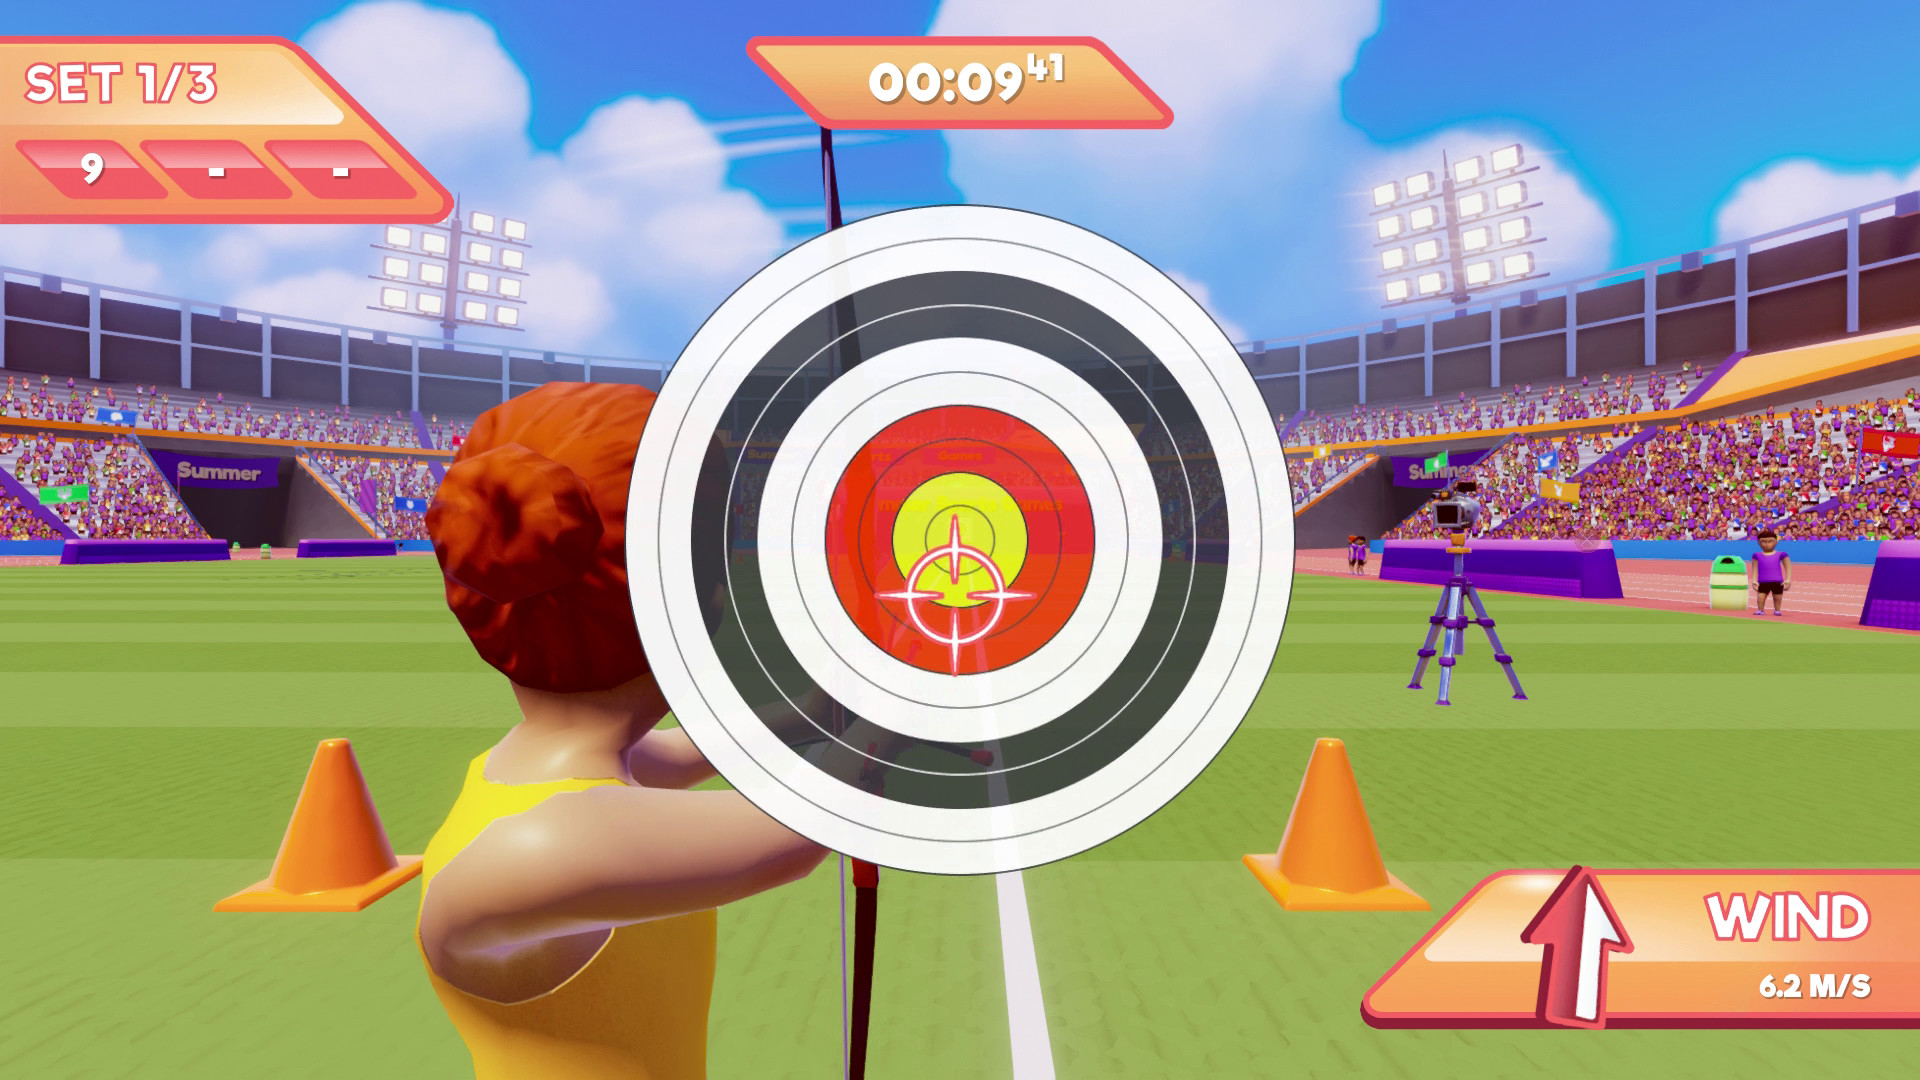 Summer Sports Games screenshot